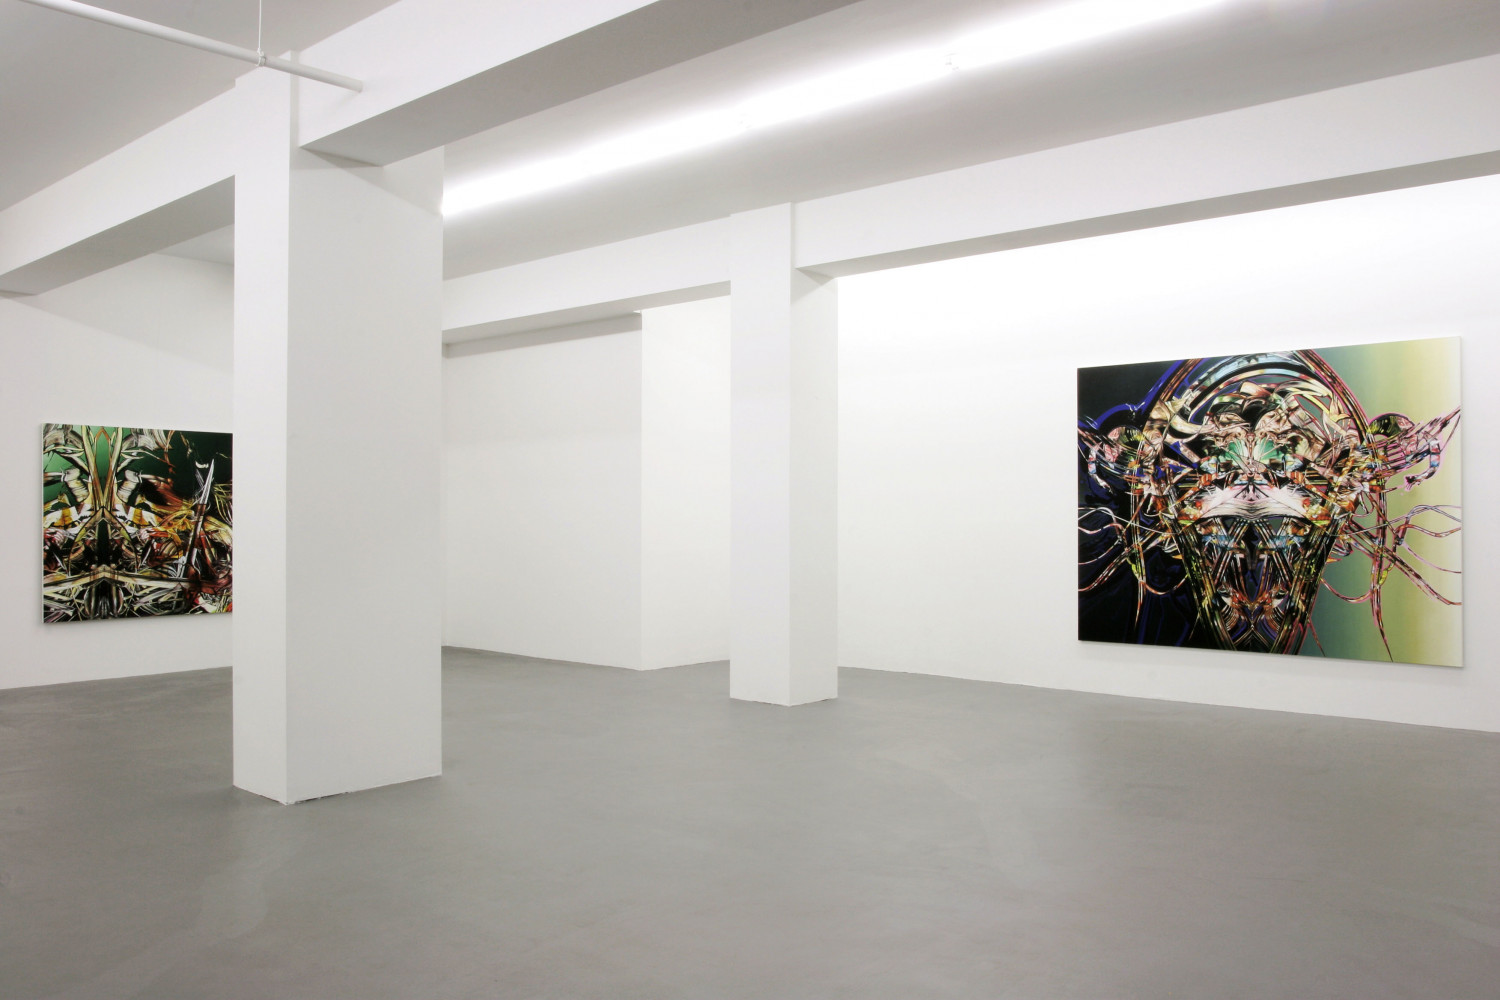 Sean Dawson, Installationsansicht, Buchmann Galerie, 2005